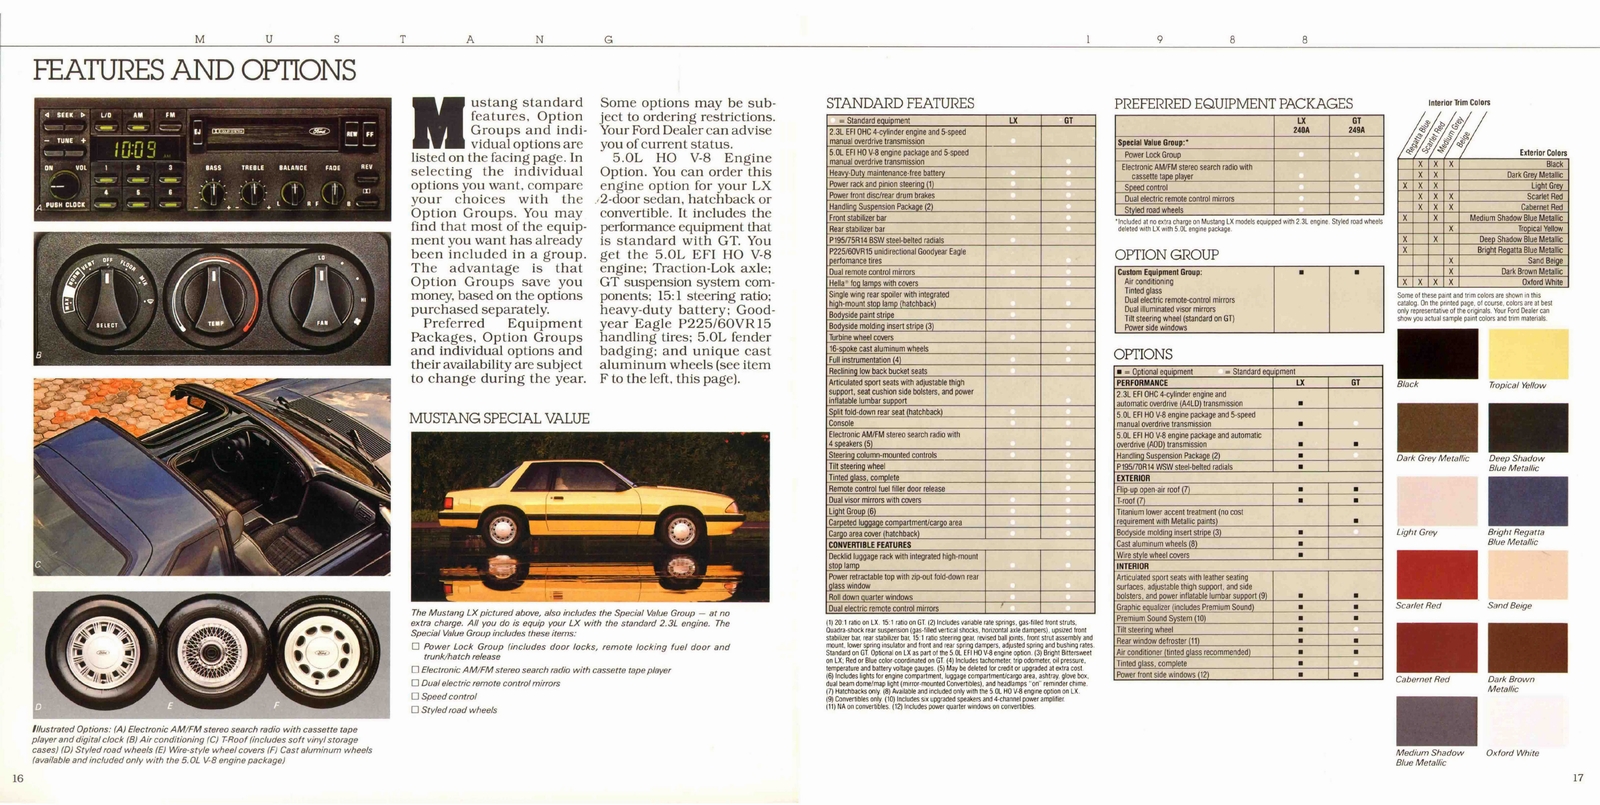 n_1988 Ford Mustang-16-17.jpg